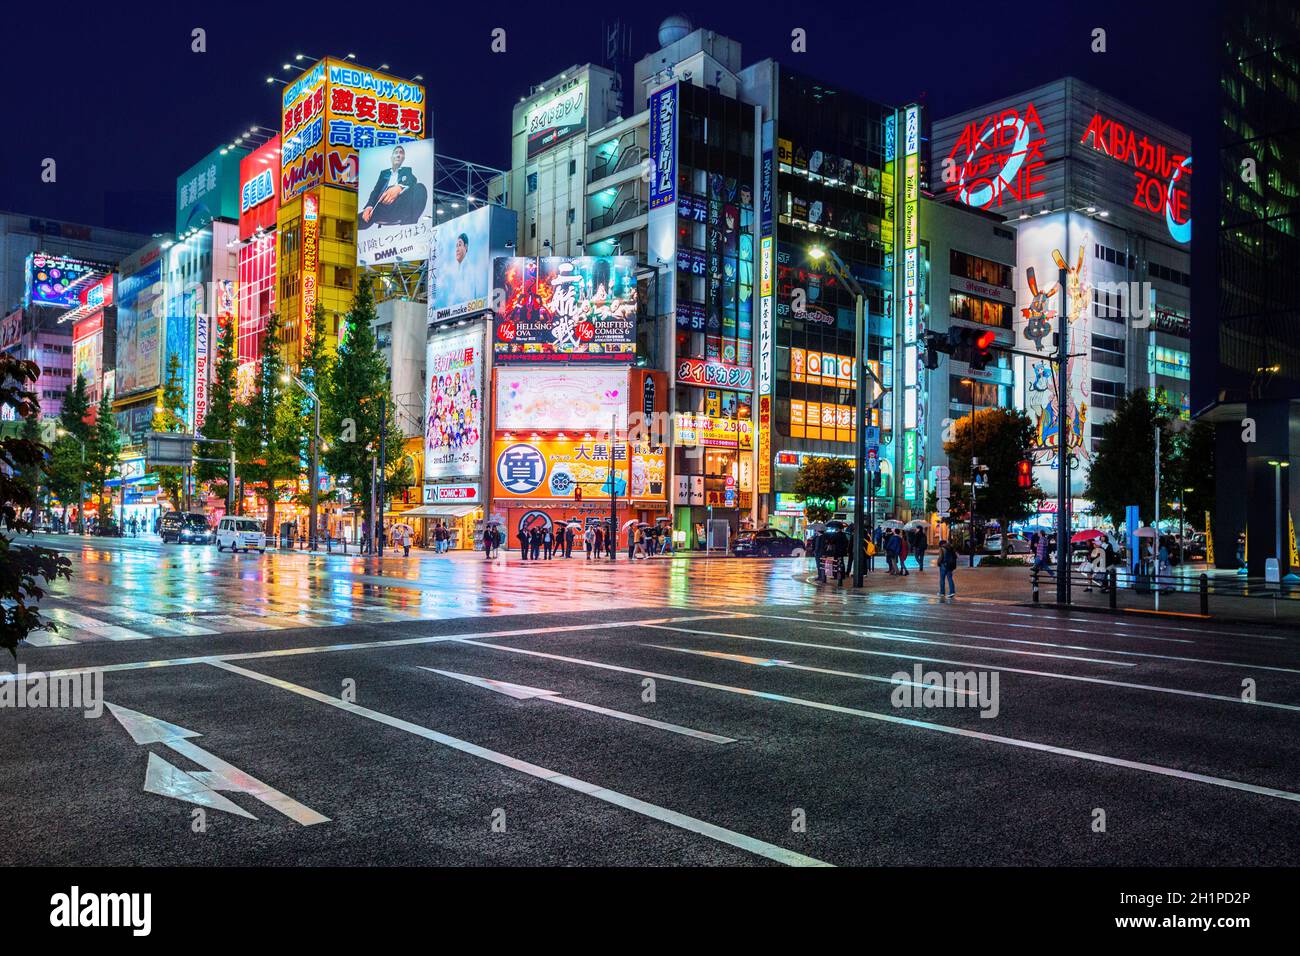 Tokyo, Giappone - 19 Novembre 2018: le luci al neon e cartelloni pubblicitari su edifici di Akihabara a notte piovosa. Akihabara è un quartiere dello shopping Foto Stock